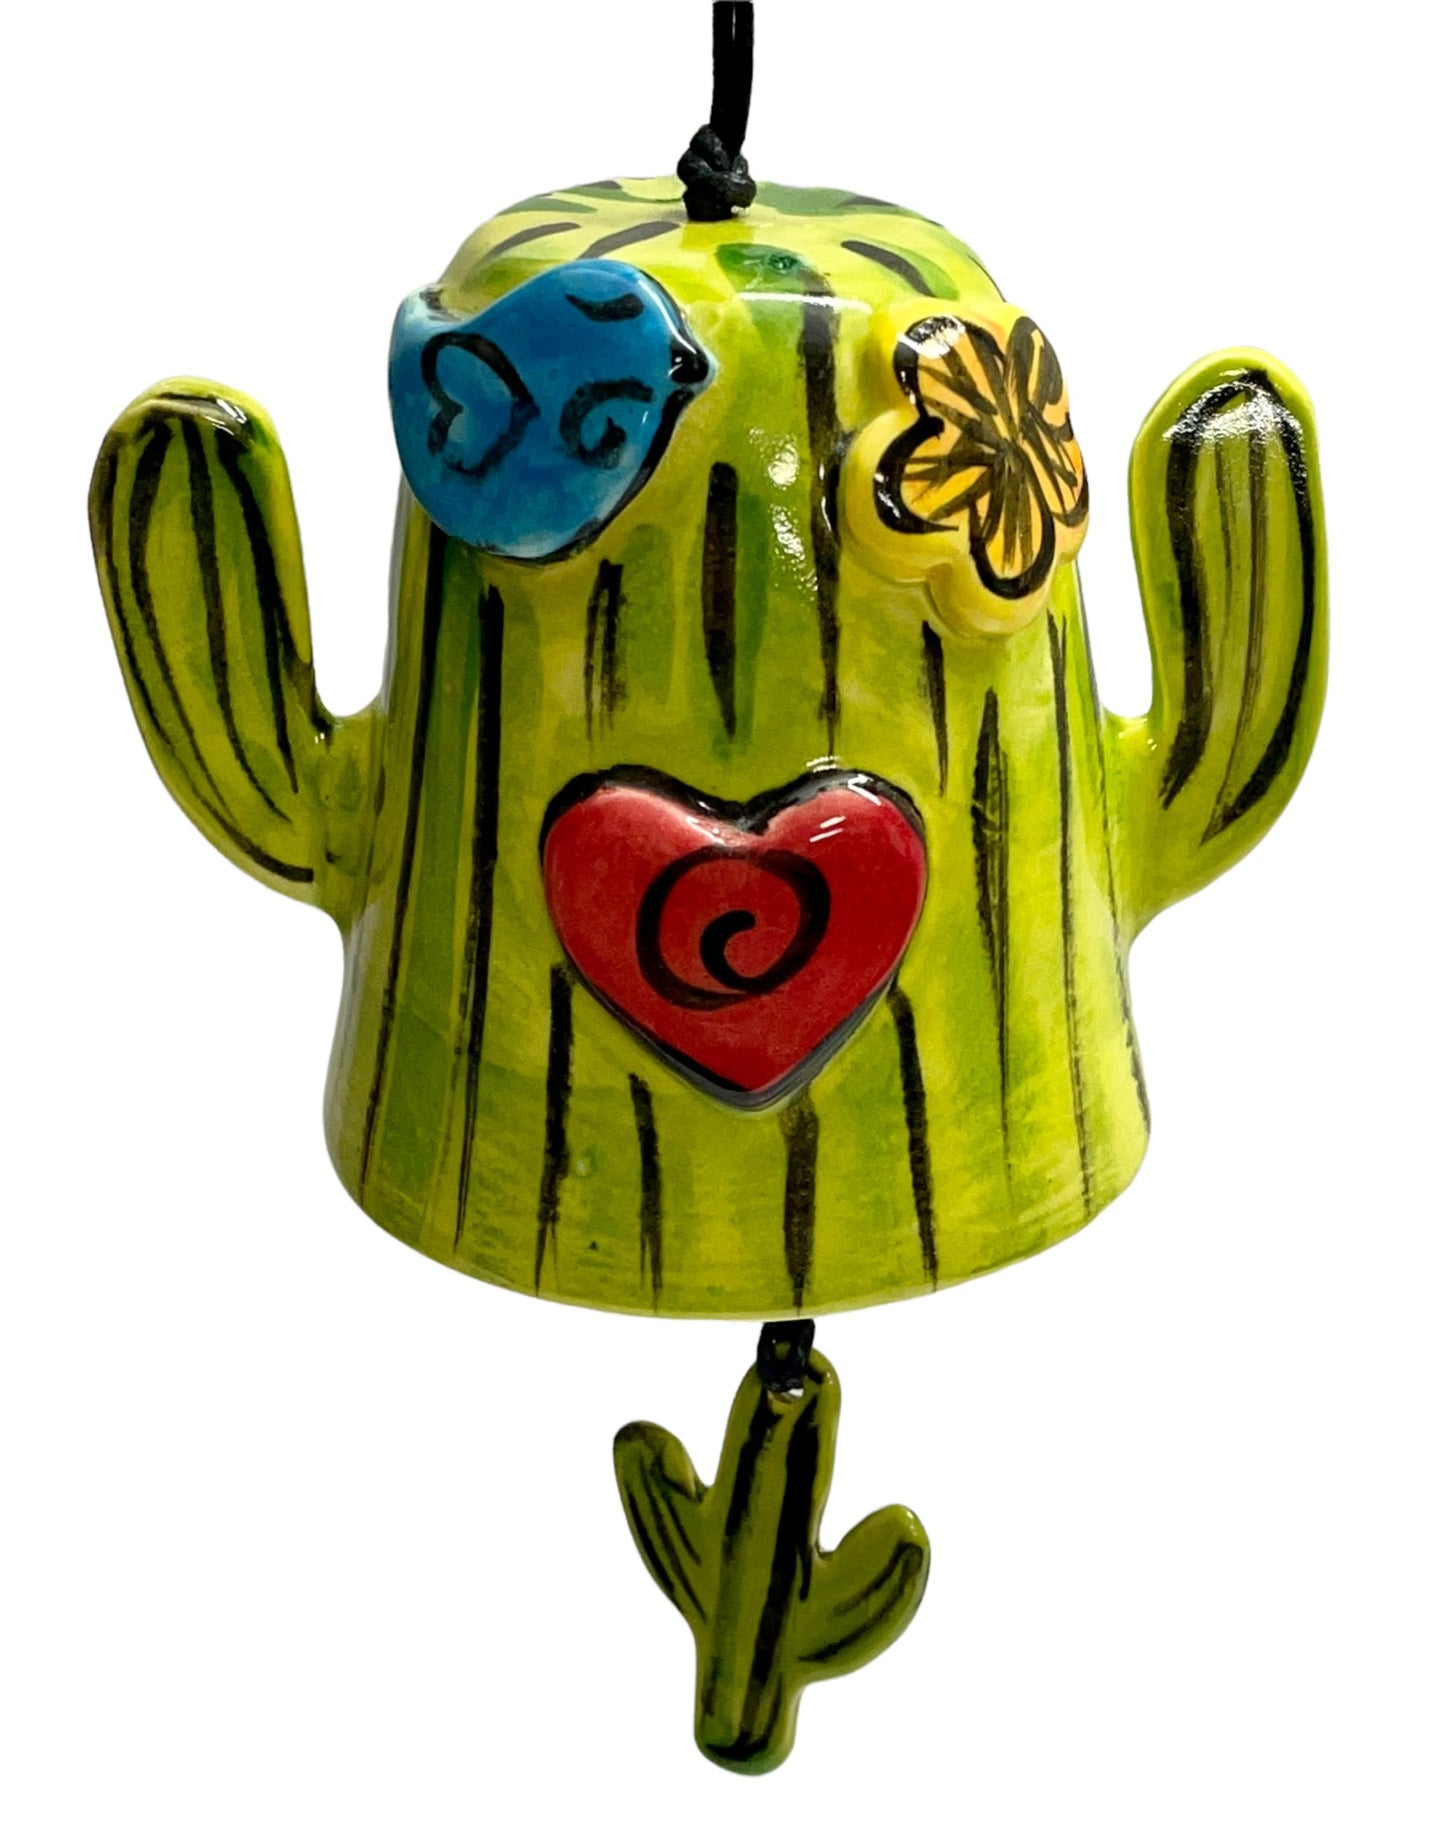 Cactus bells